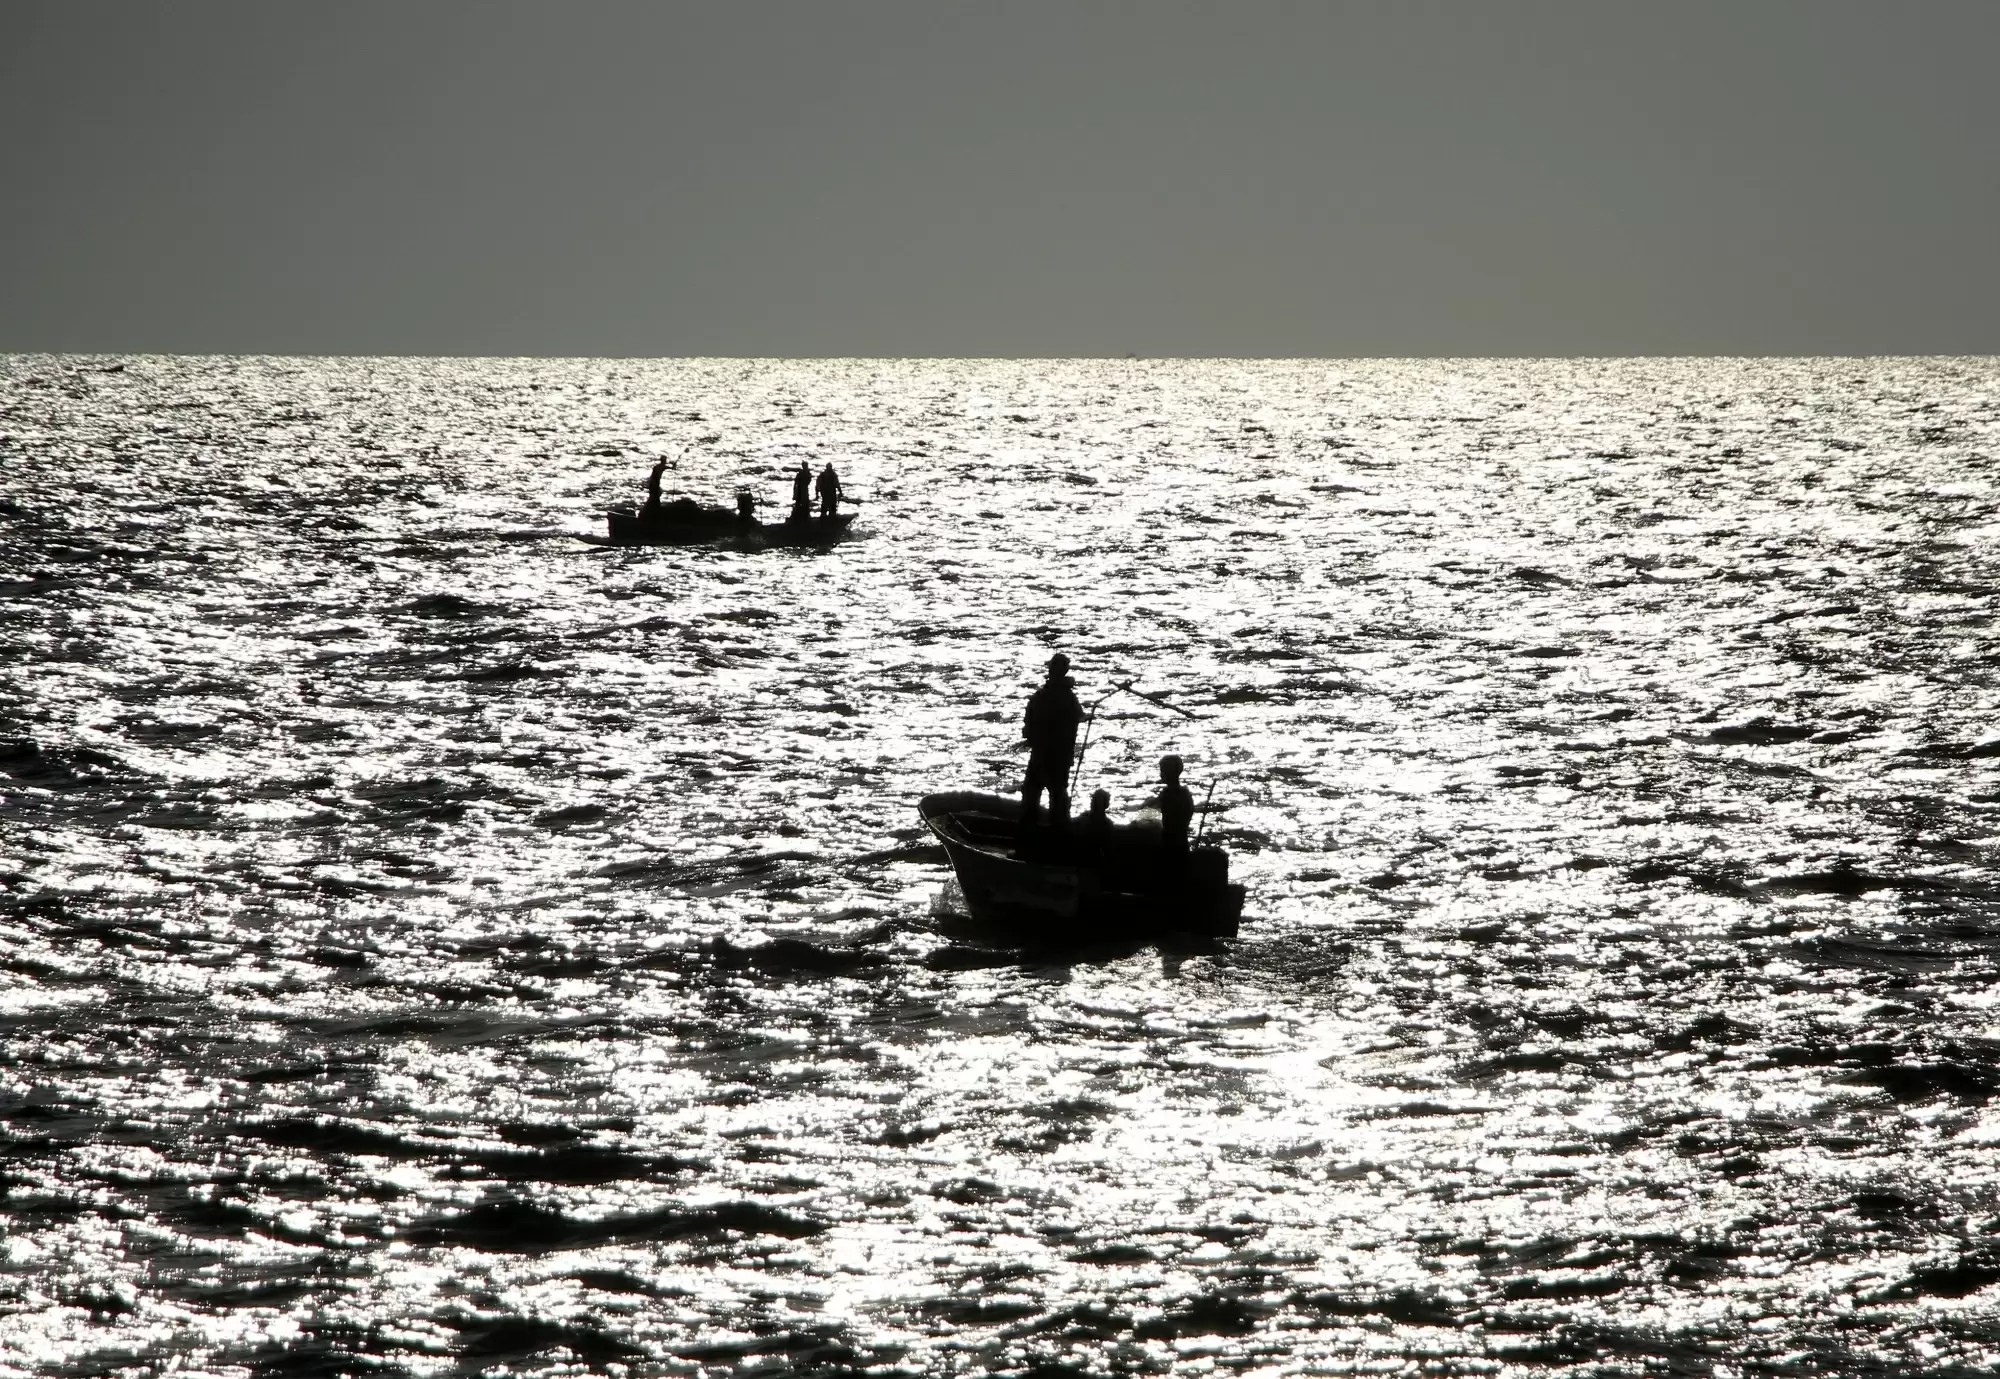 कन्याकुमारी के पास श्रीलंकाई नाव जब्त, पांच लोग हिरासत में